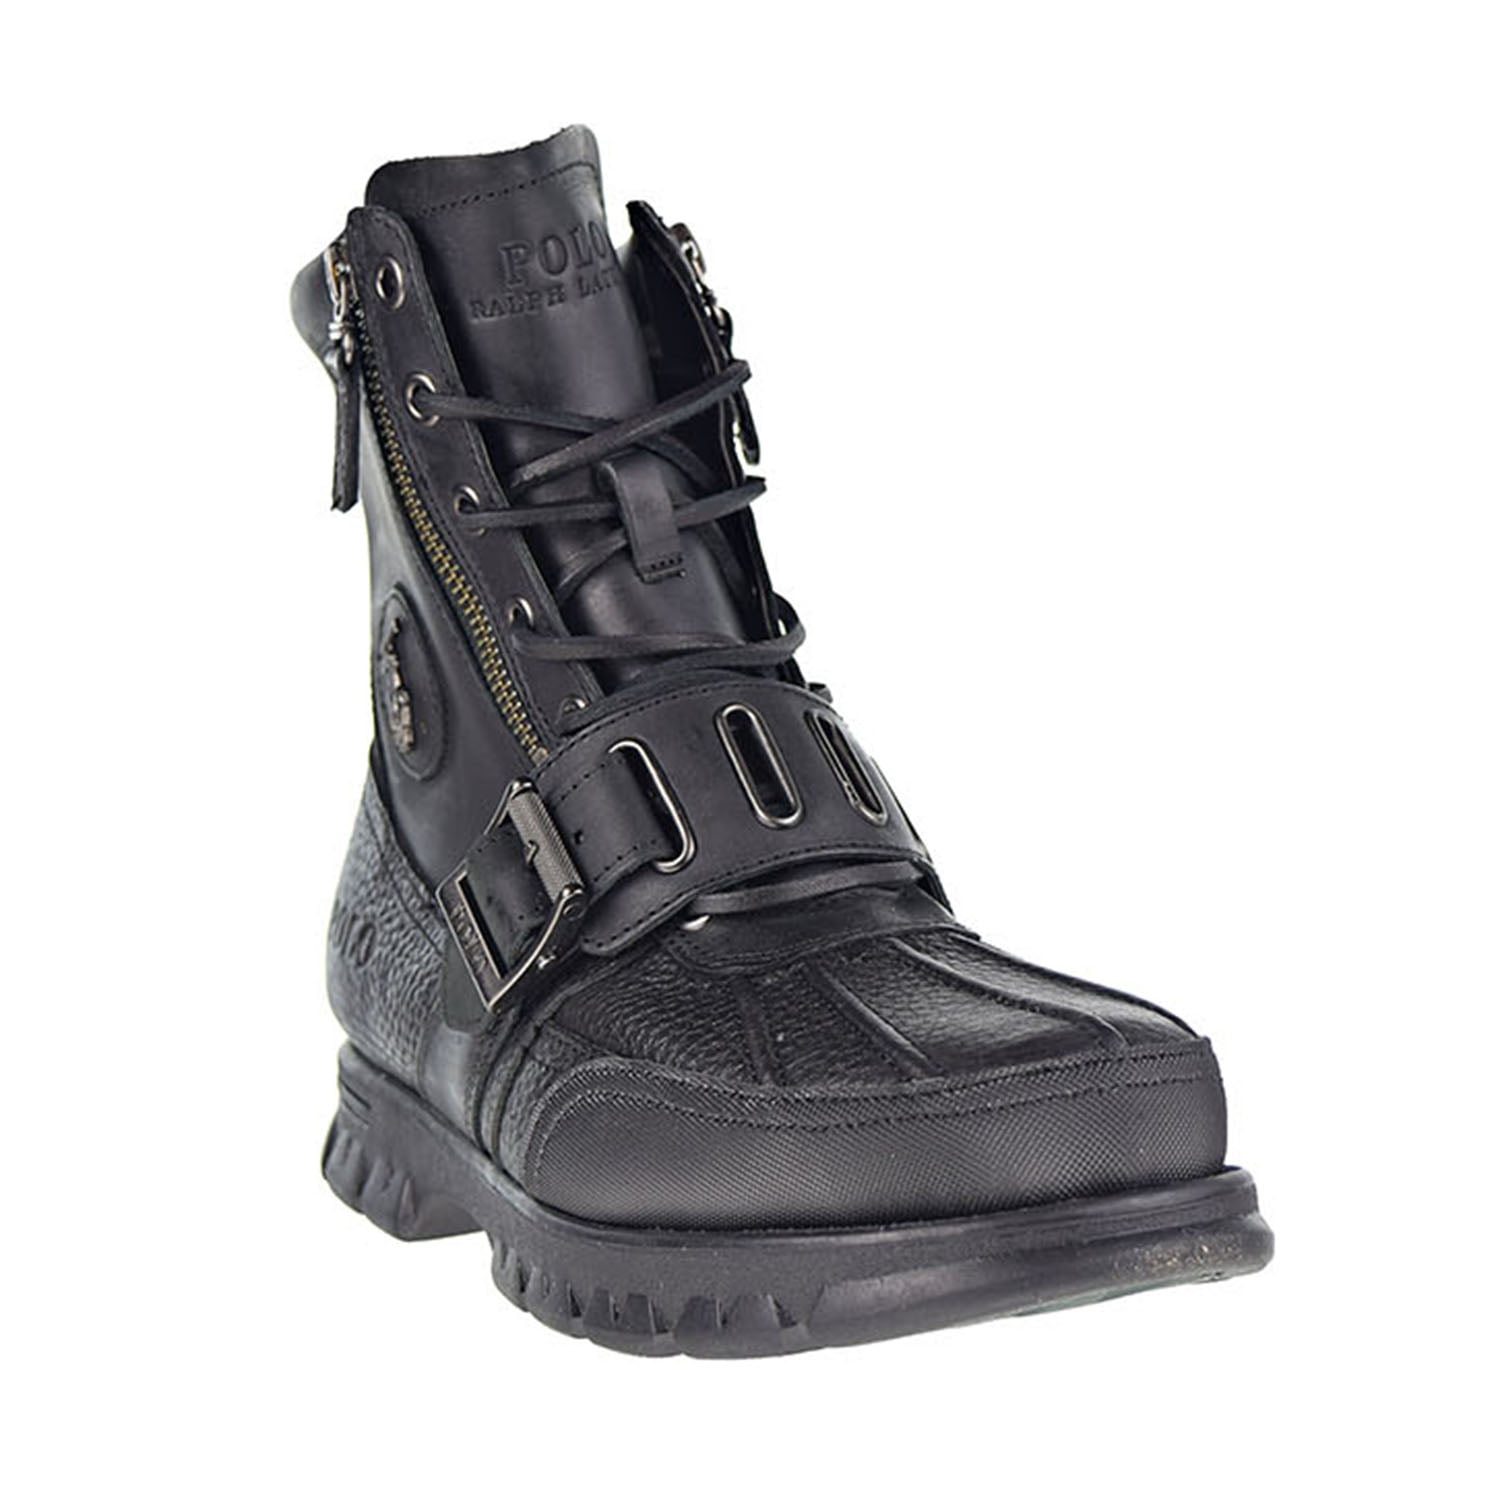 Polo Ralph Lauren Andres III Men's Boots Black 812527239-001 